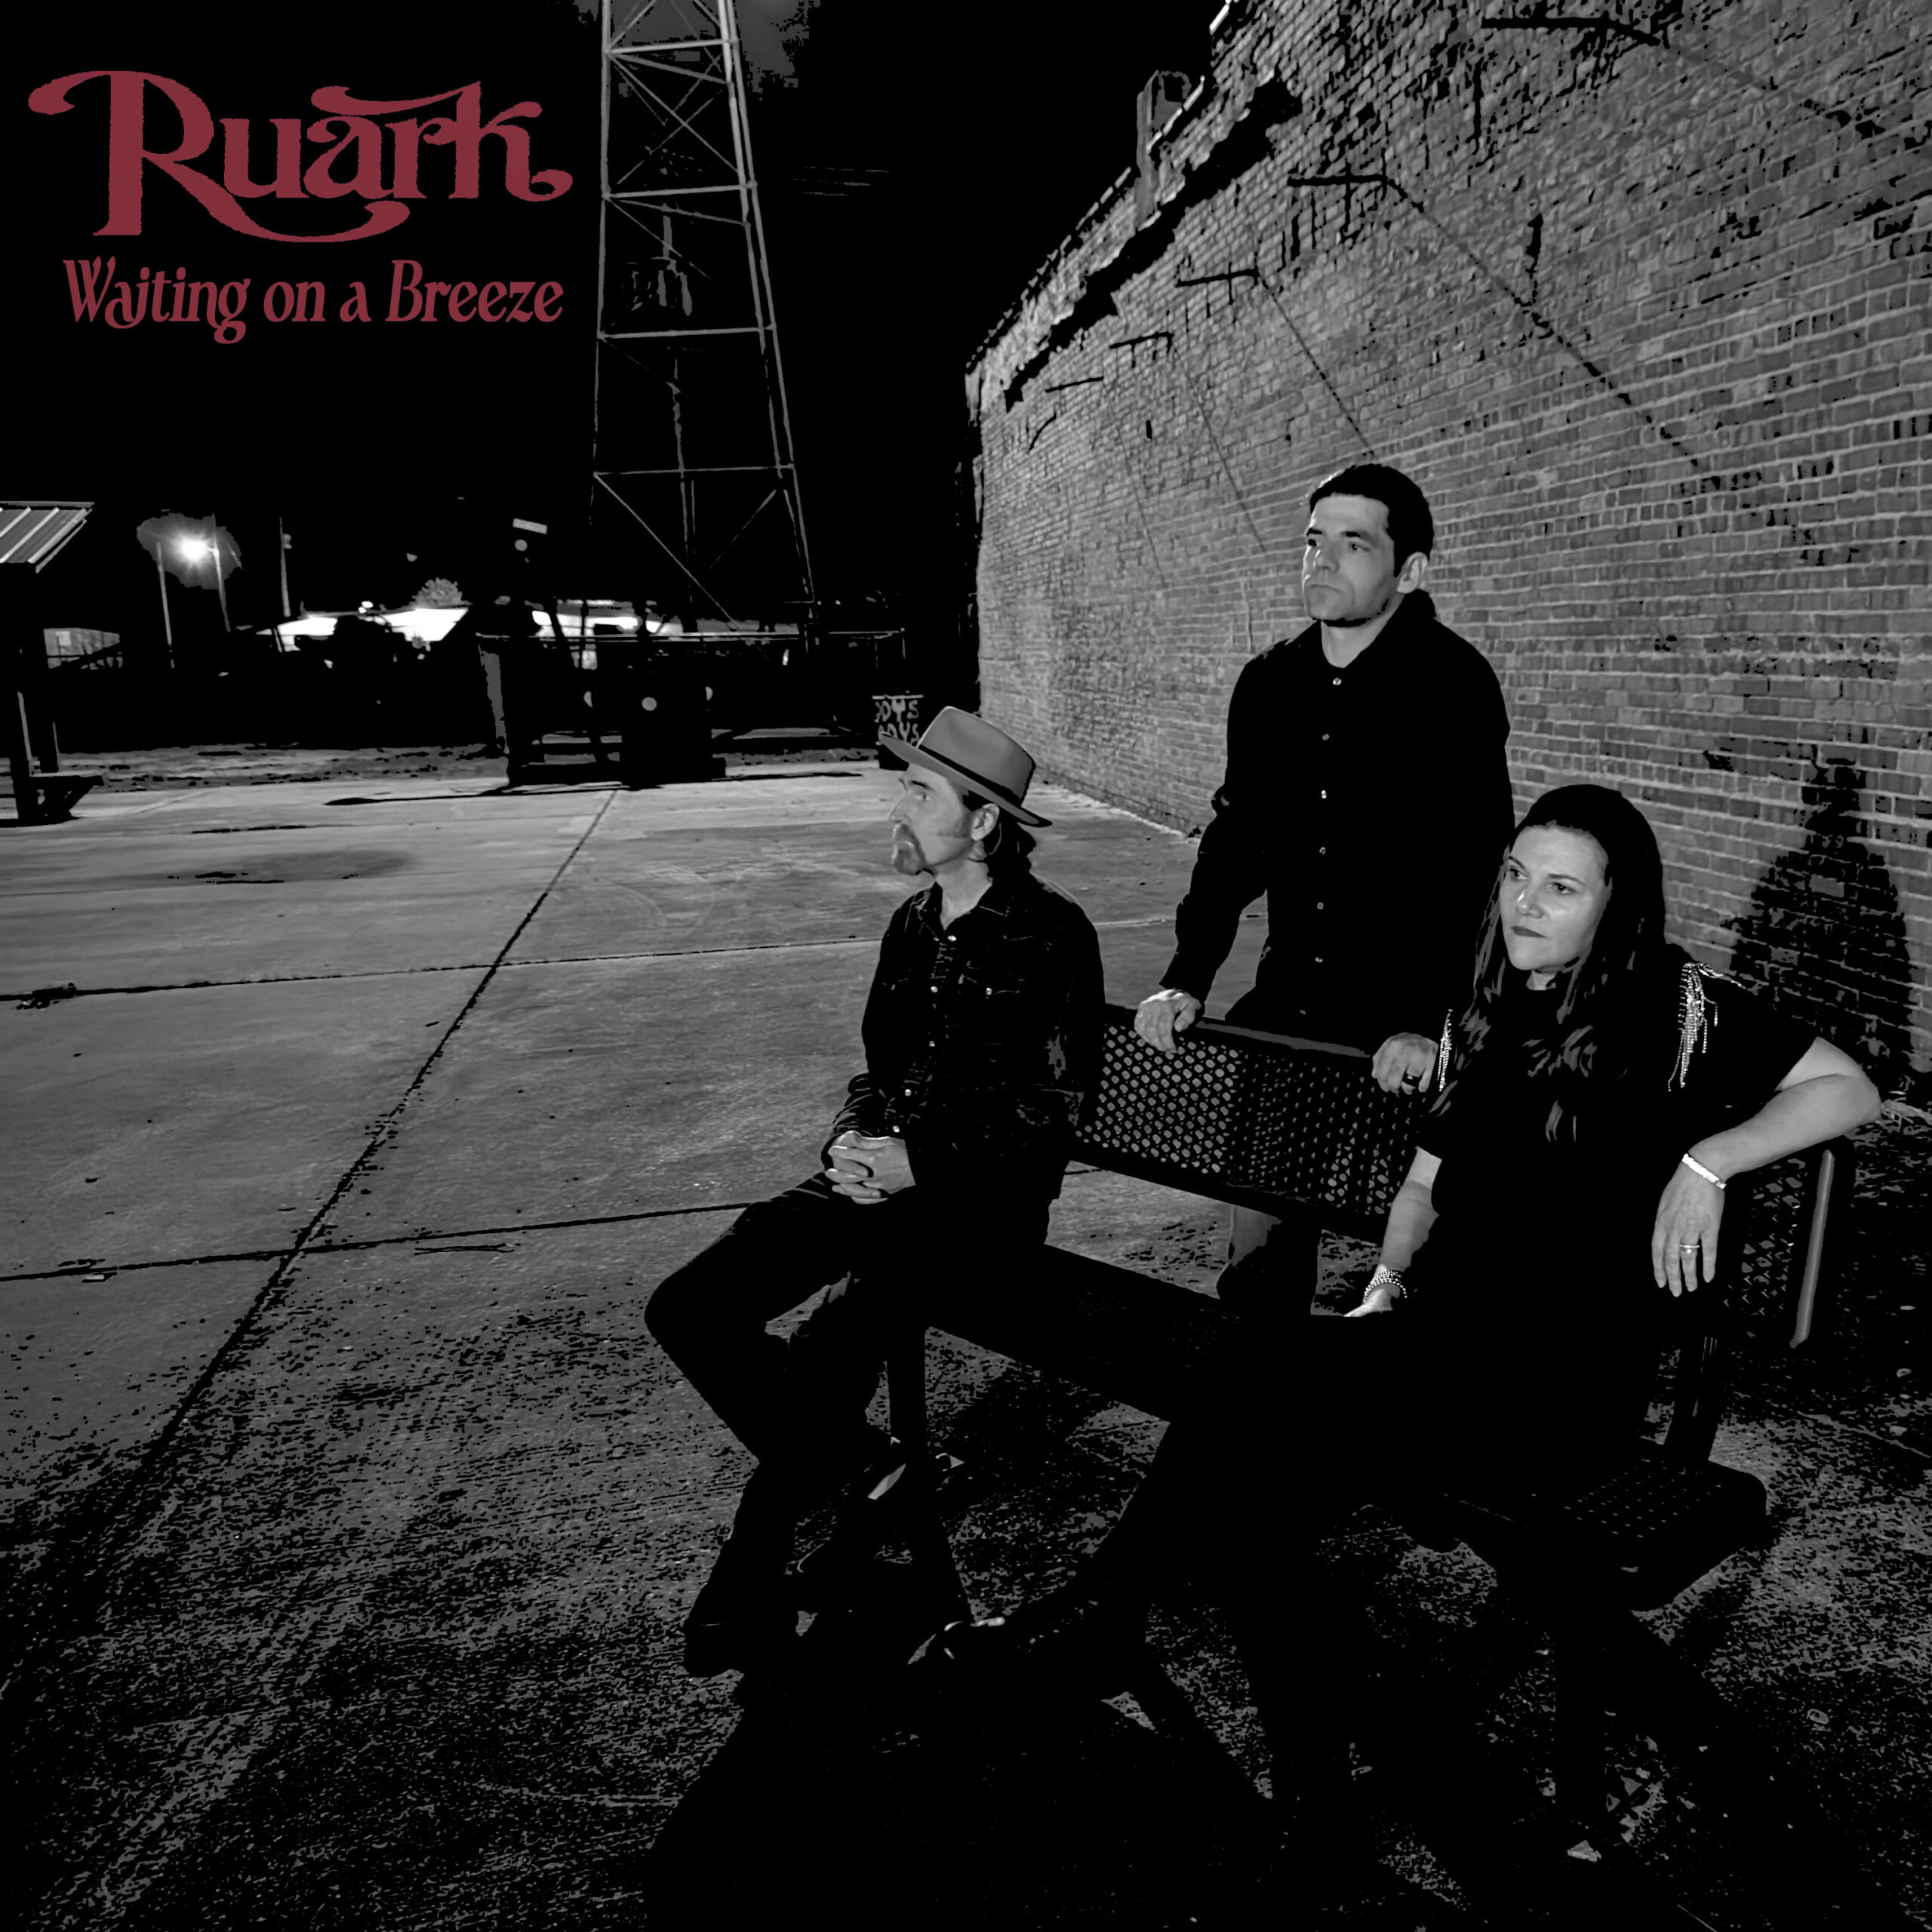  Descubre la magia de “Waiting on a Breeze”: El nuevo álbum de Ruark